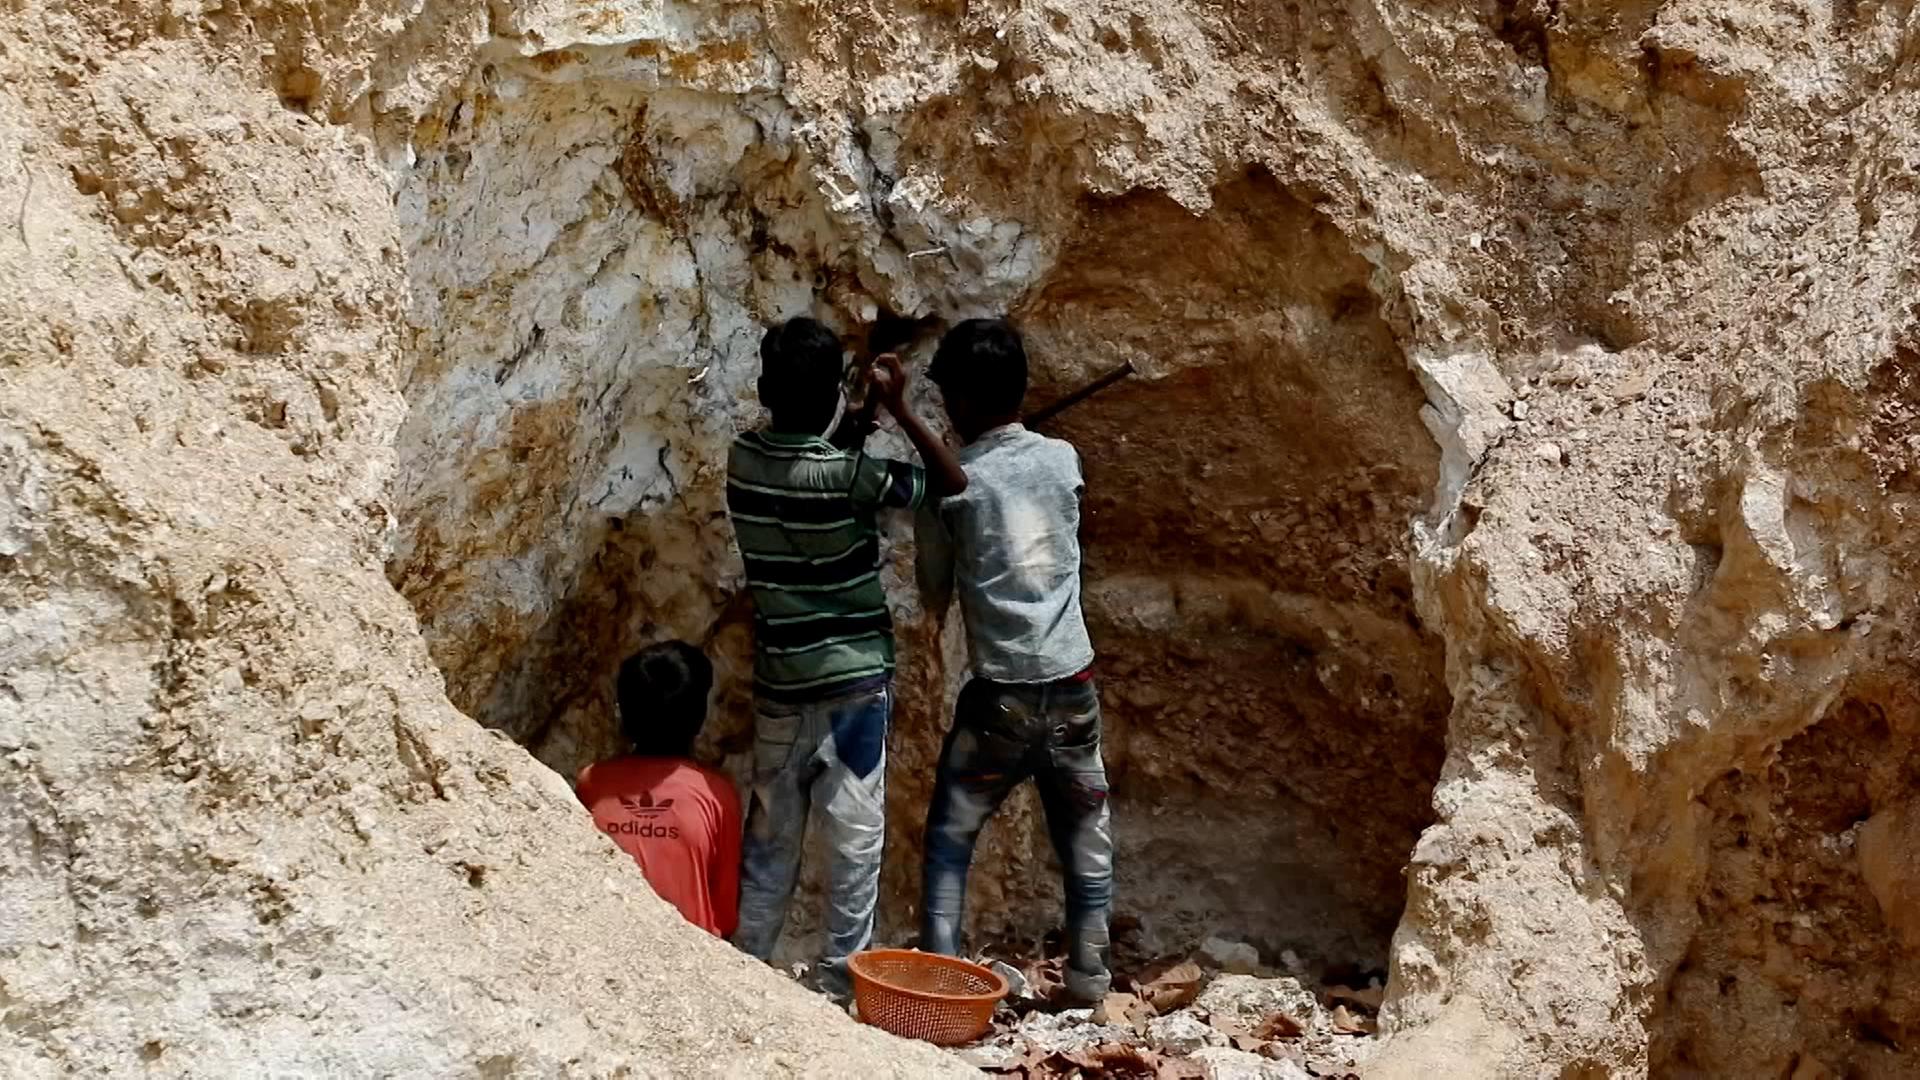 Auf dem Bild sind drei Kinder zu sehen, die Mica-Mineralien in einer Grube abbauen.